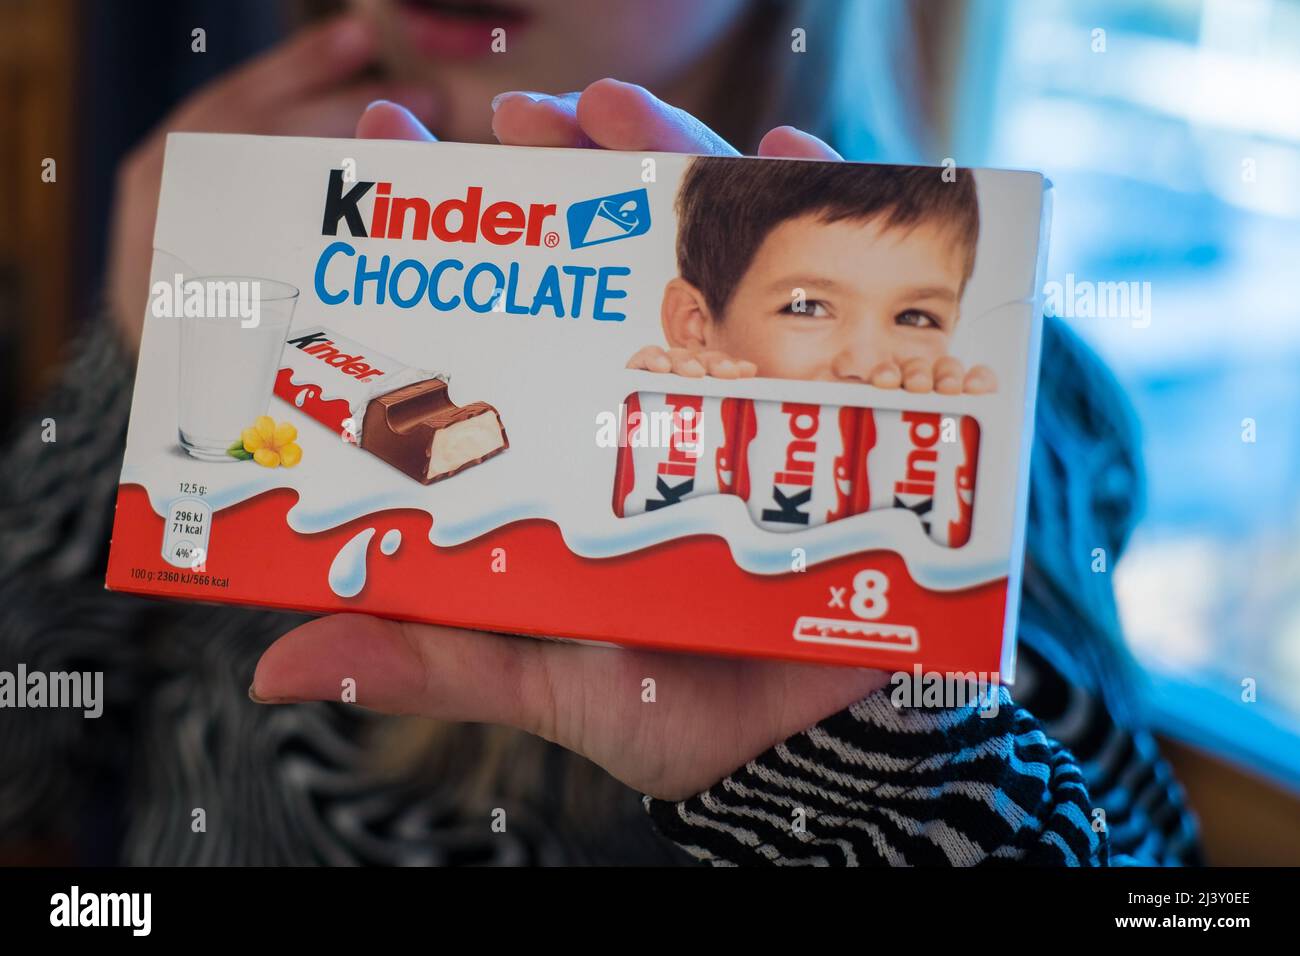 Kinder cioccolatini immagini e fotografie stock ad alta risoluzione - Alamy